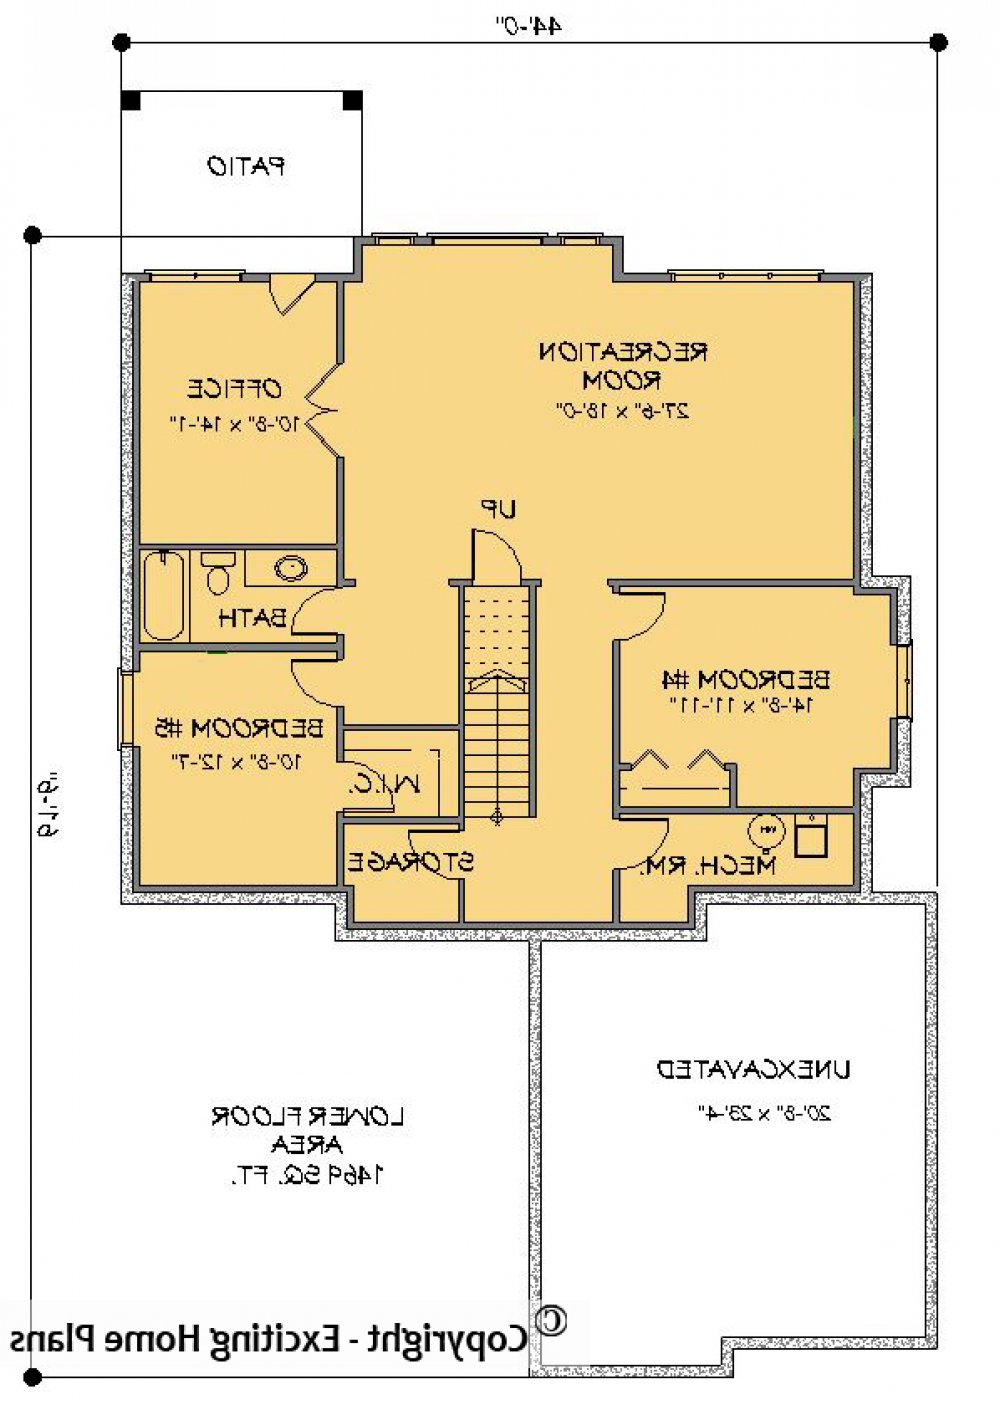 House Plan E1196-10 Lower Floor Plan REVERSE